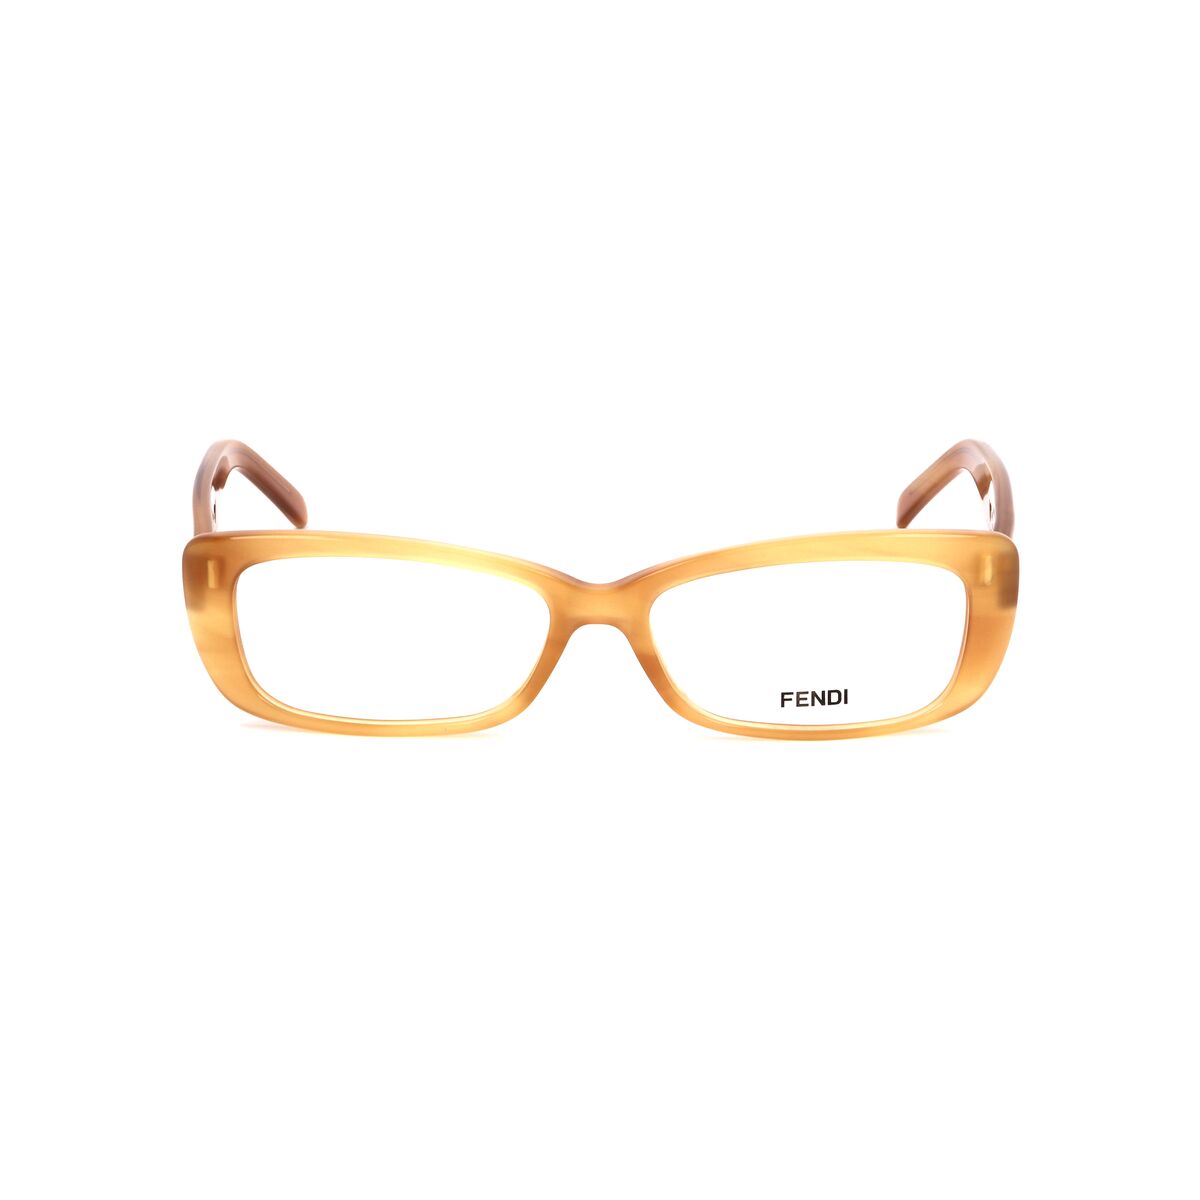 Fendi Brillenfassung FENDI-855-250 Brille Ohne Sehstärke Brillengestell